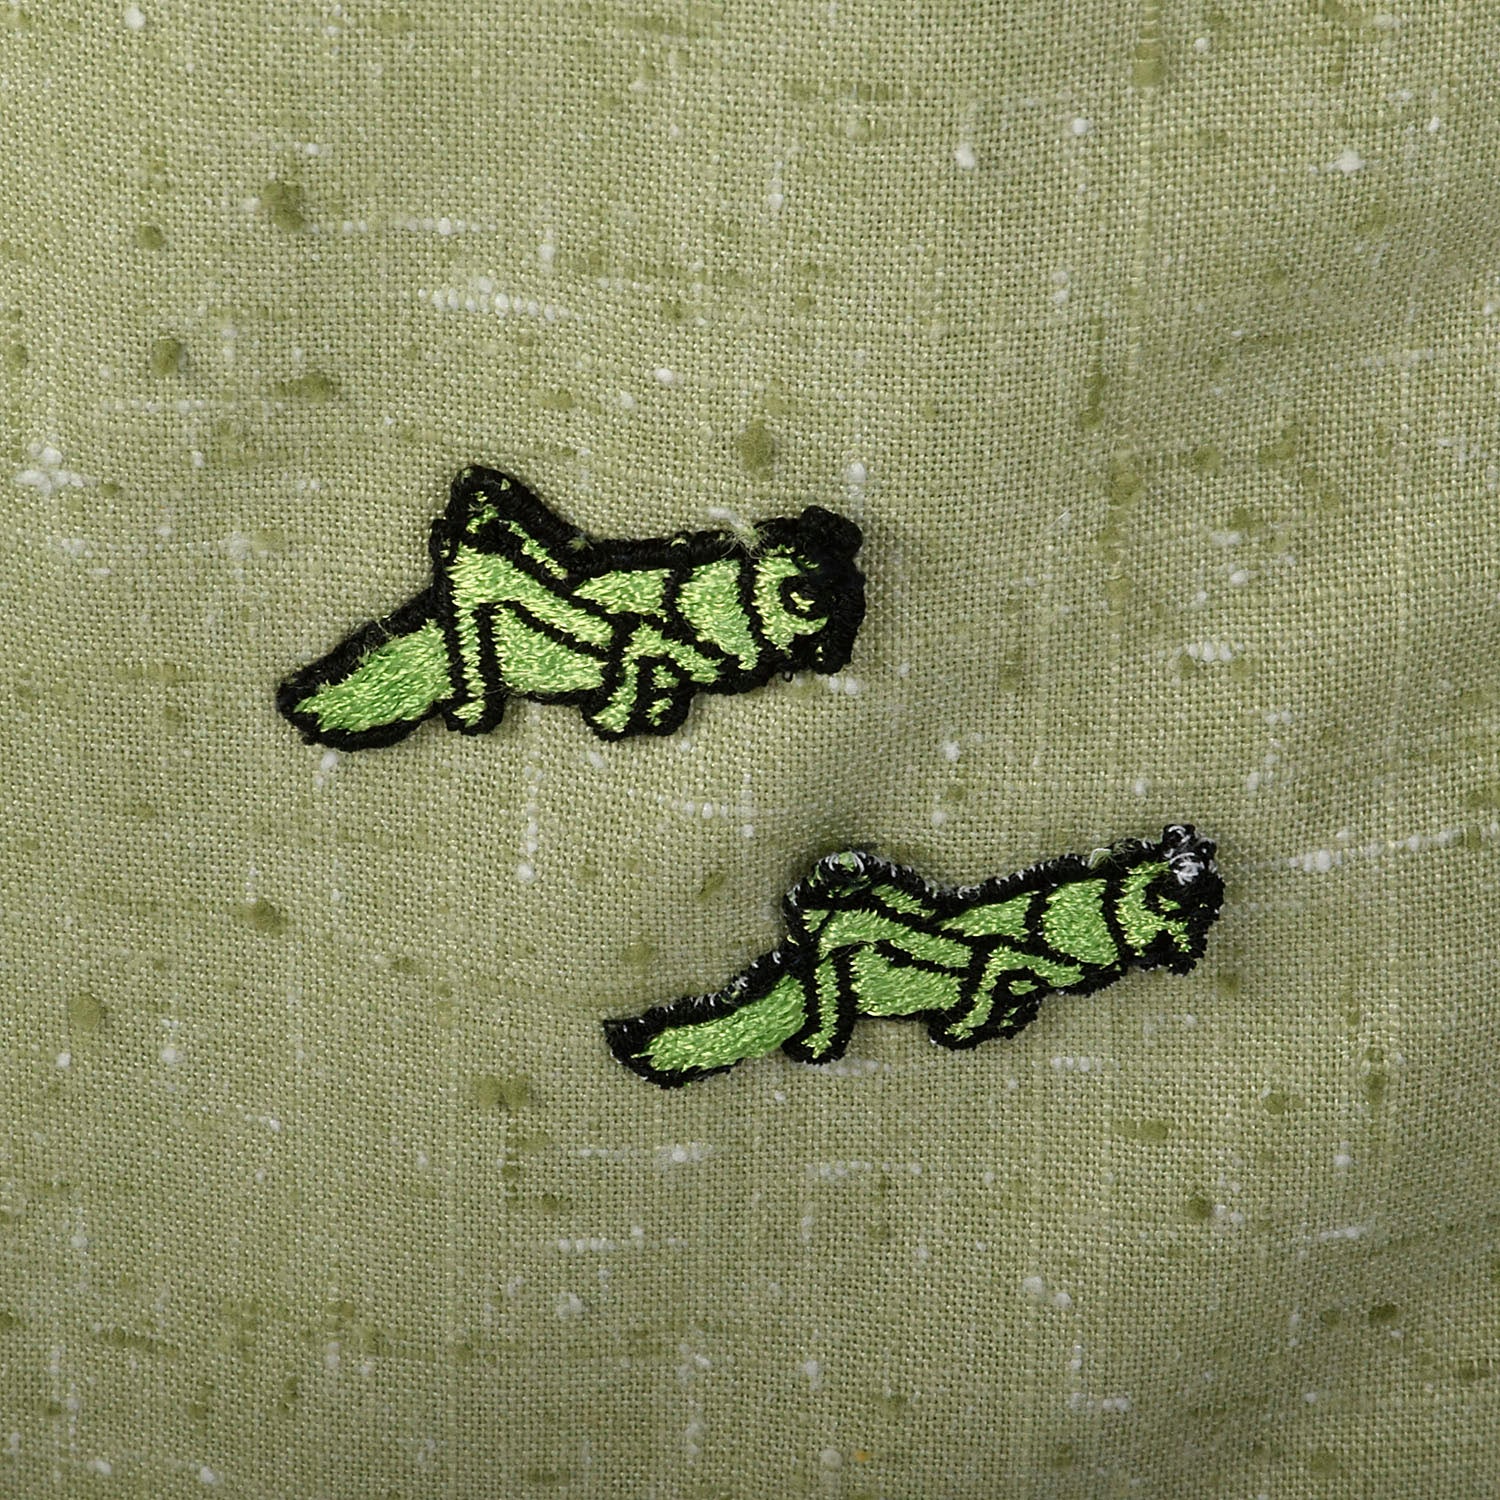 Medium 1970s Pants Green Grasshopper Applique Wide Leg High Waist